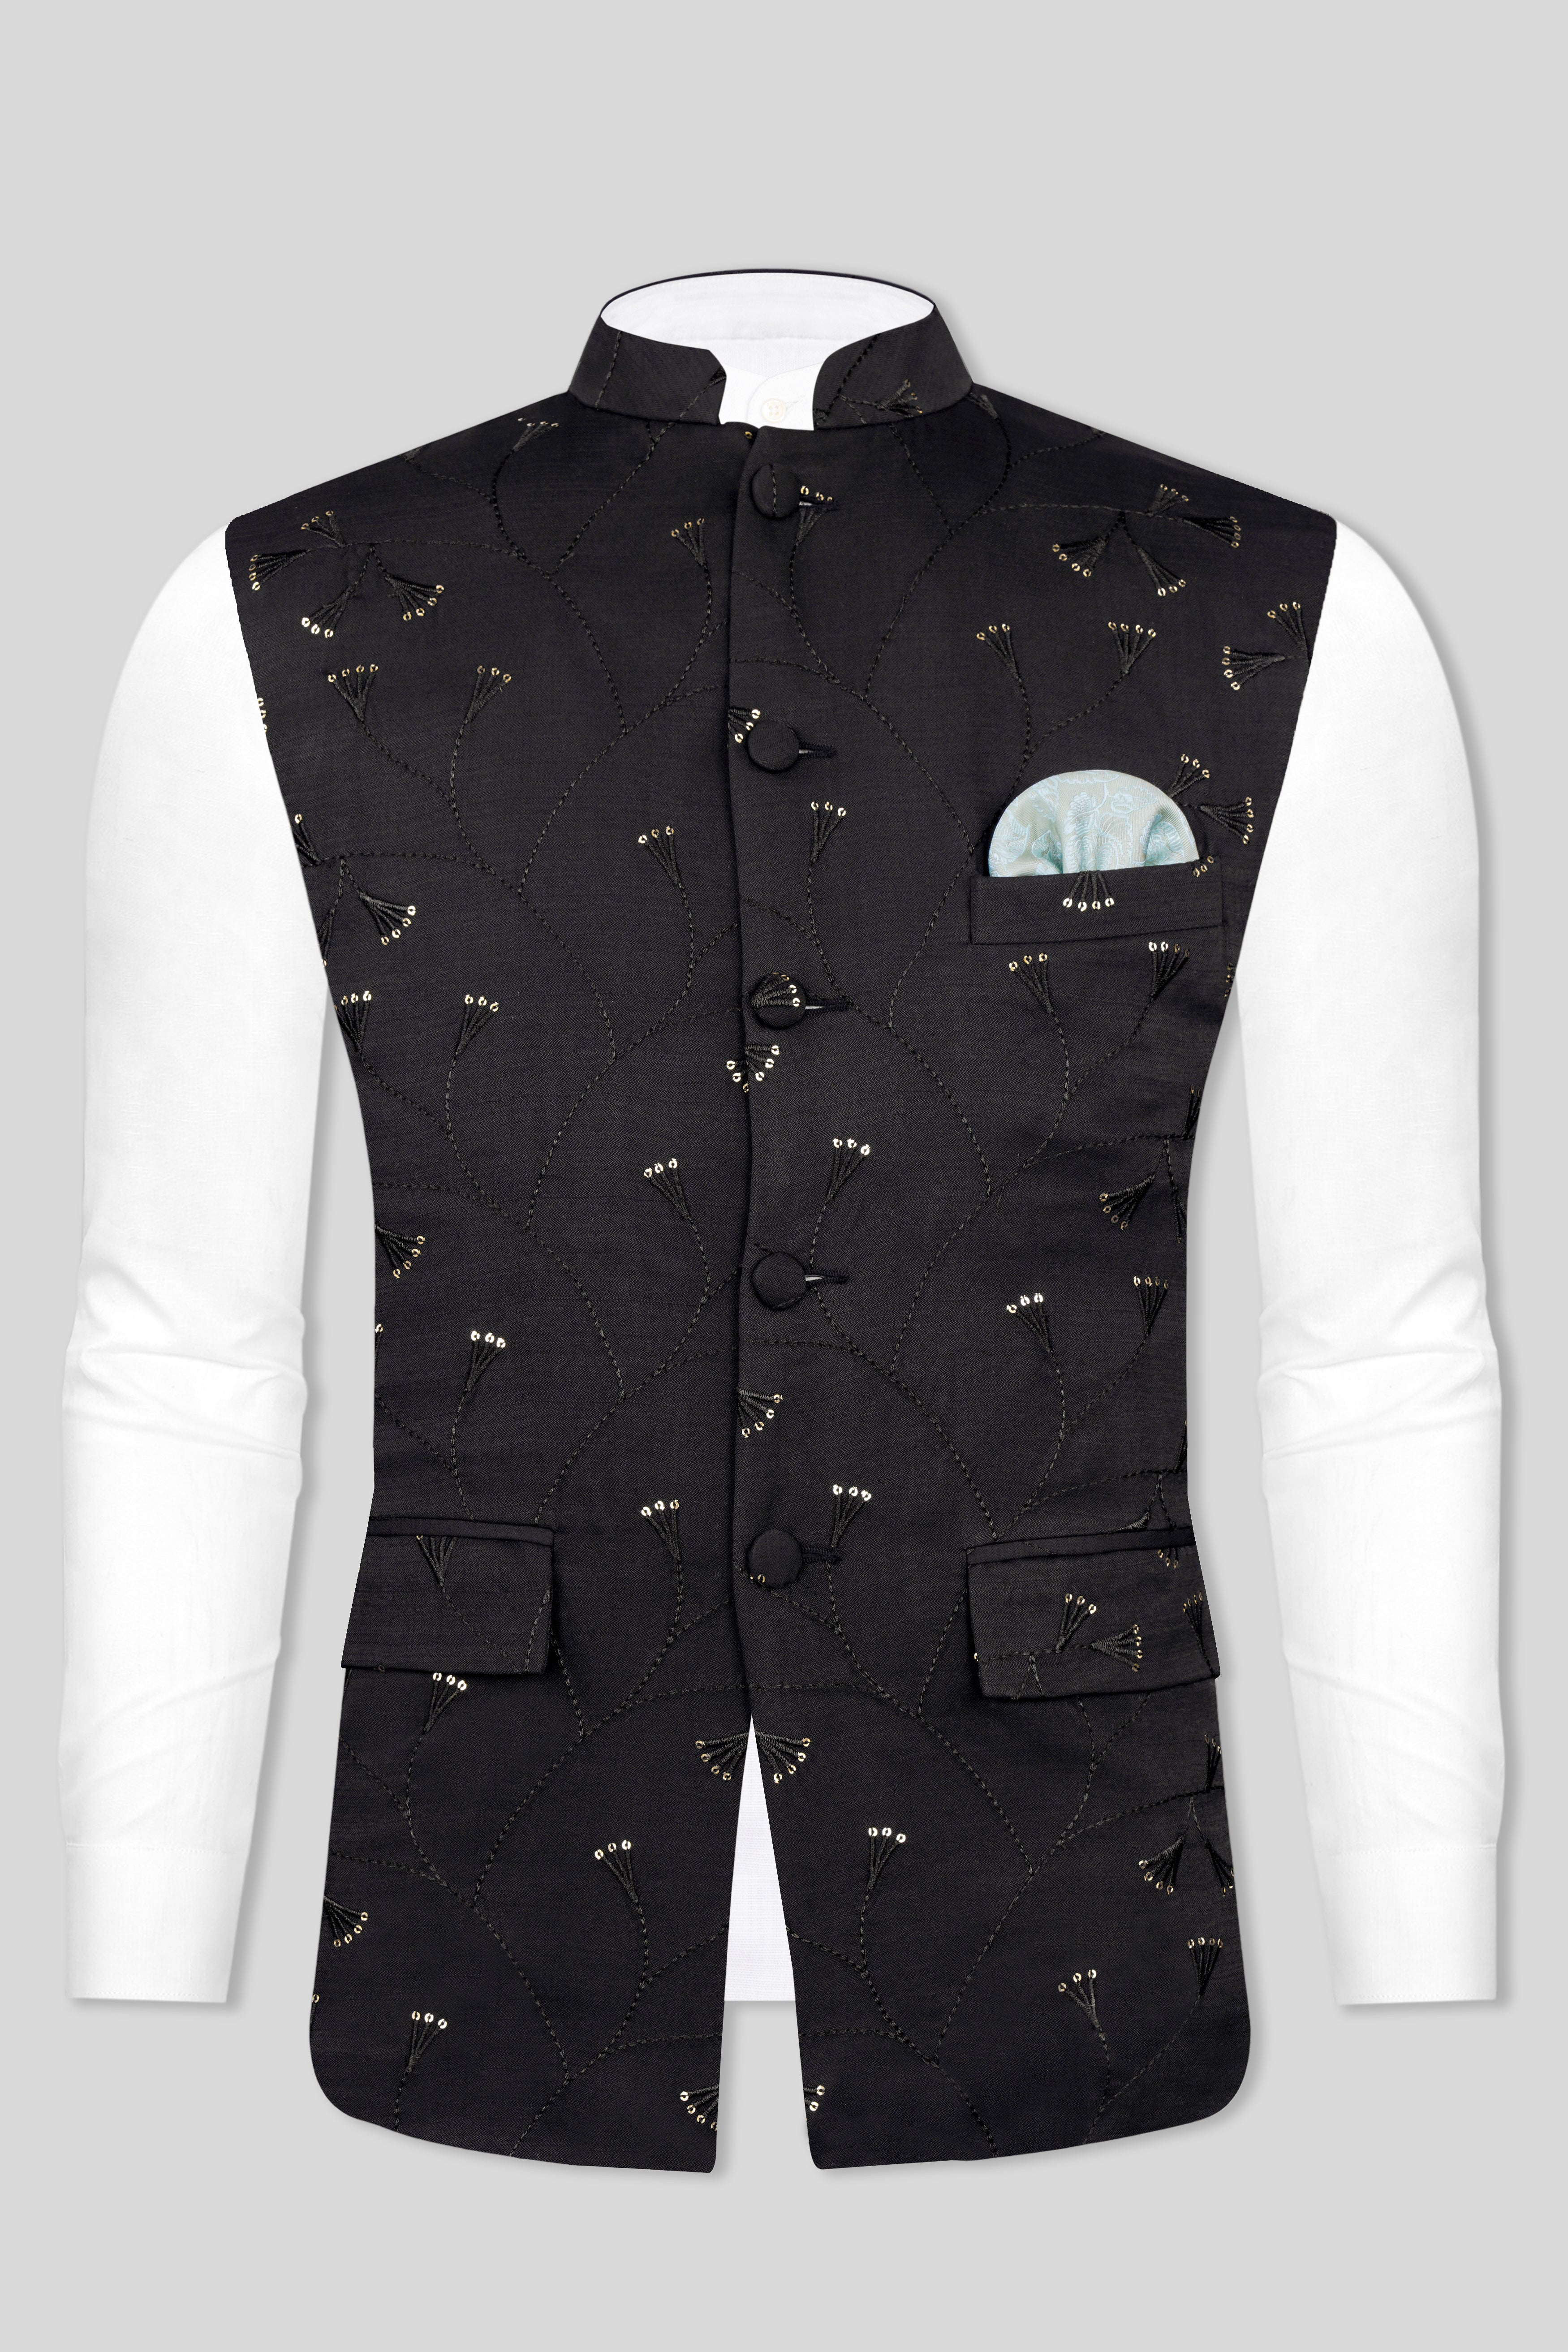 Jade Black Viscose Embroidered with Tikki Work Designer Nehru Jacket